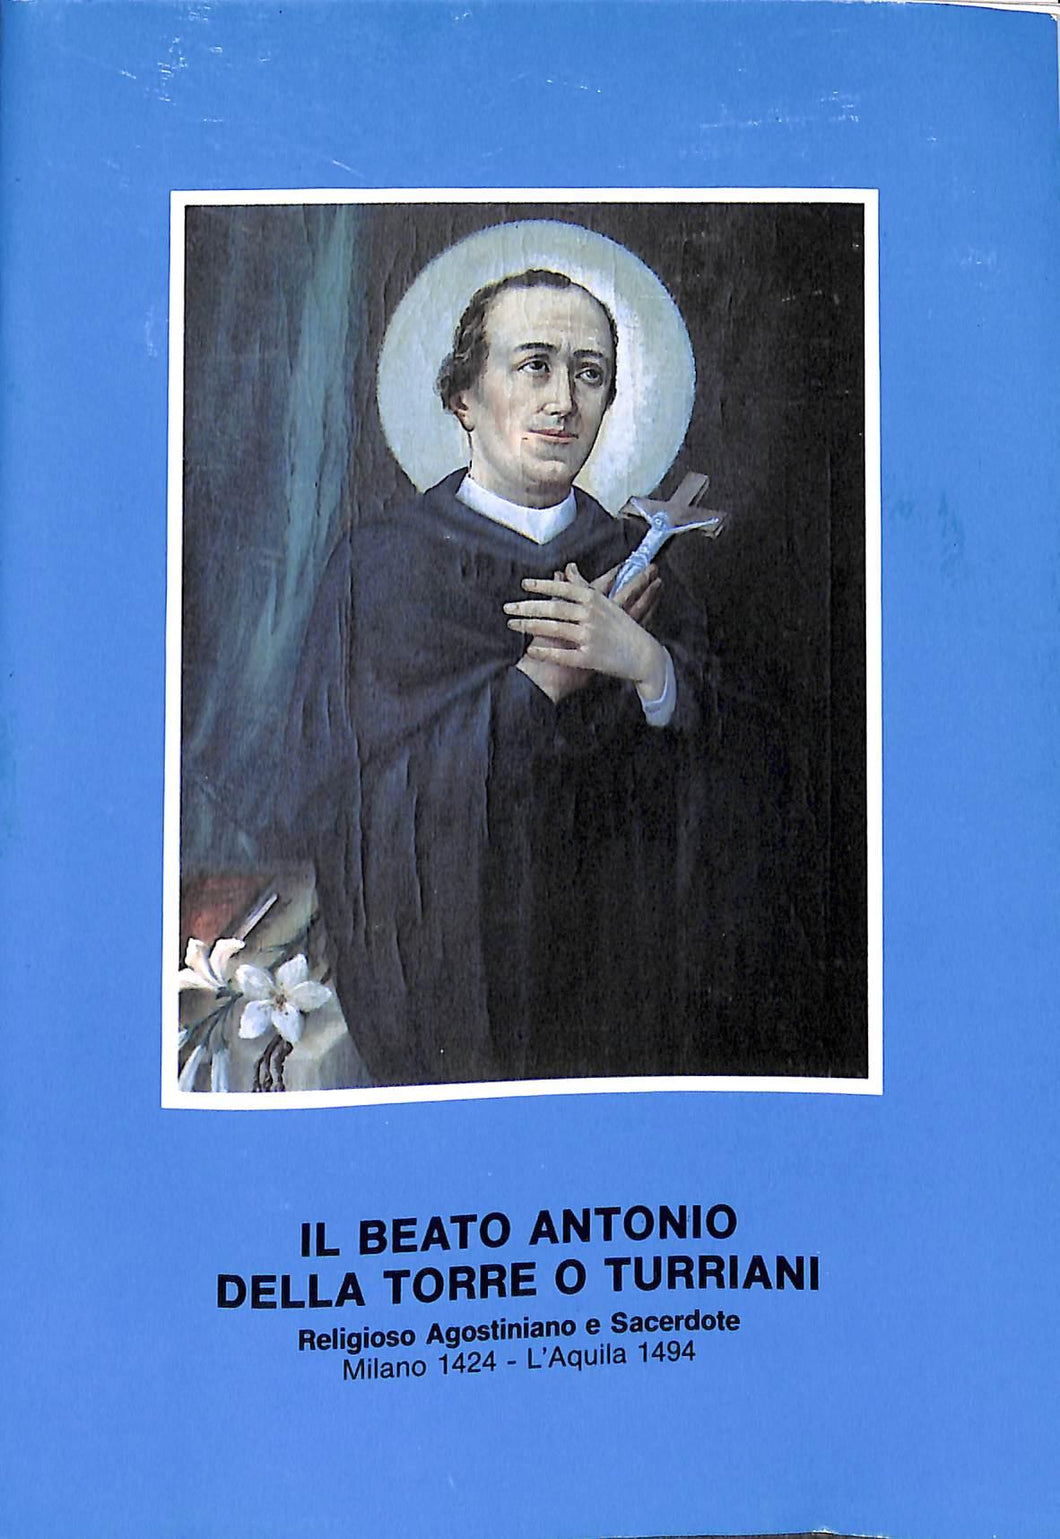 Il beato Antonio della Torre o Turriani religioso agostiniano e sacerdote,